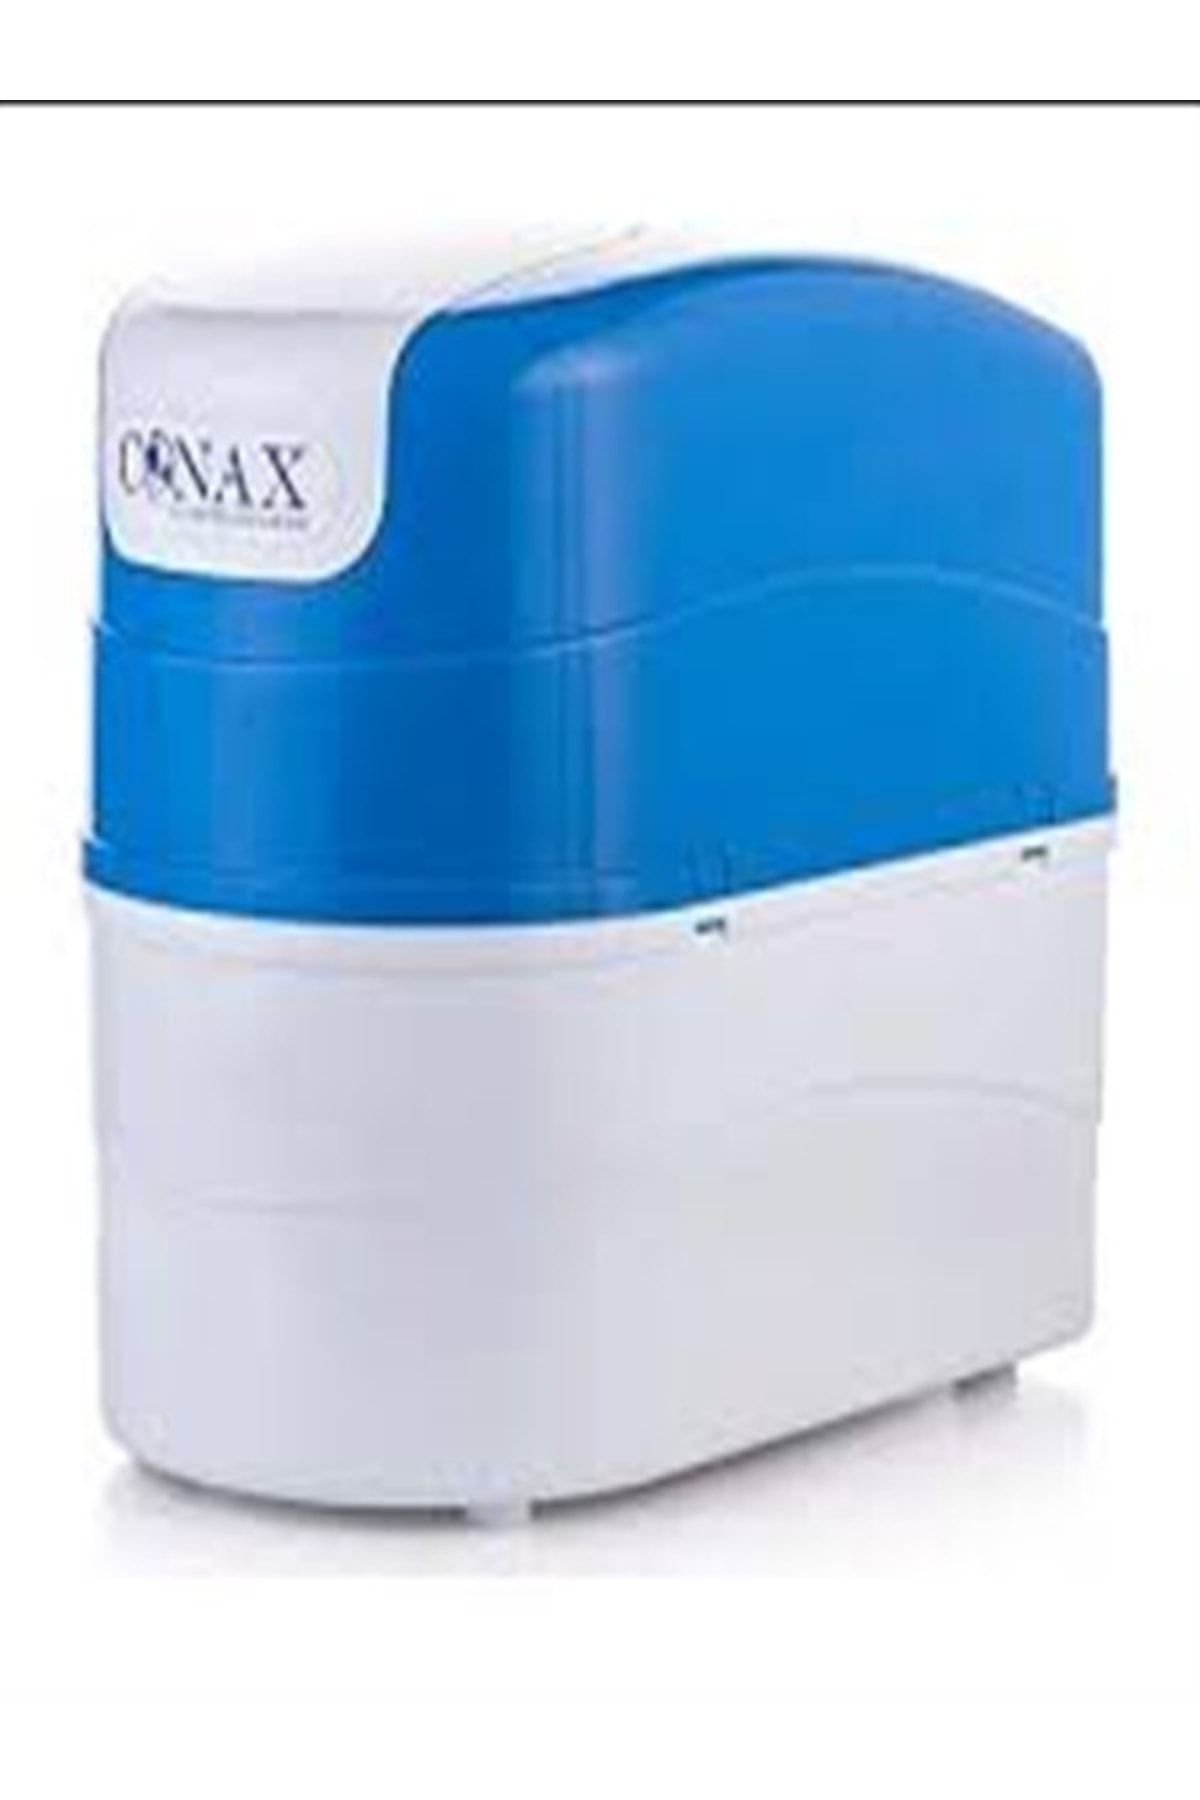 Conax Premium 6 Aşamalı Pompalı Su Arıtma Cihazı 12 Litrelik